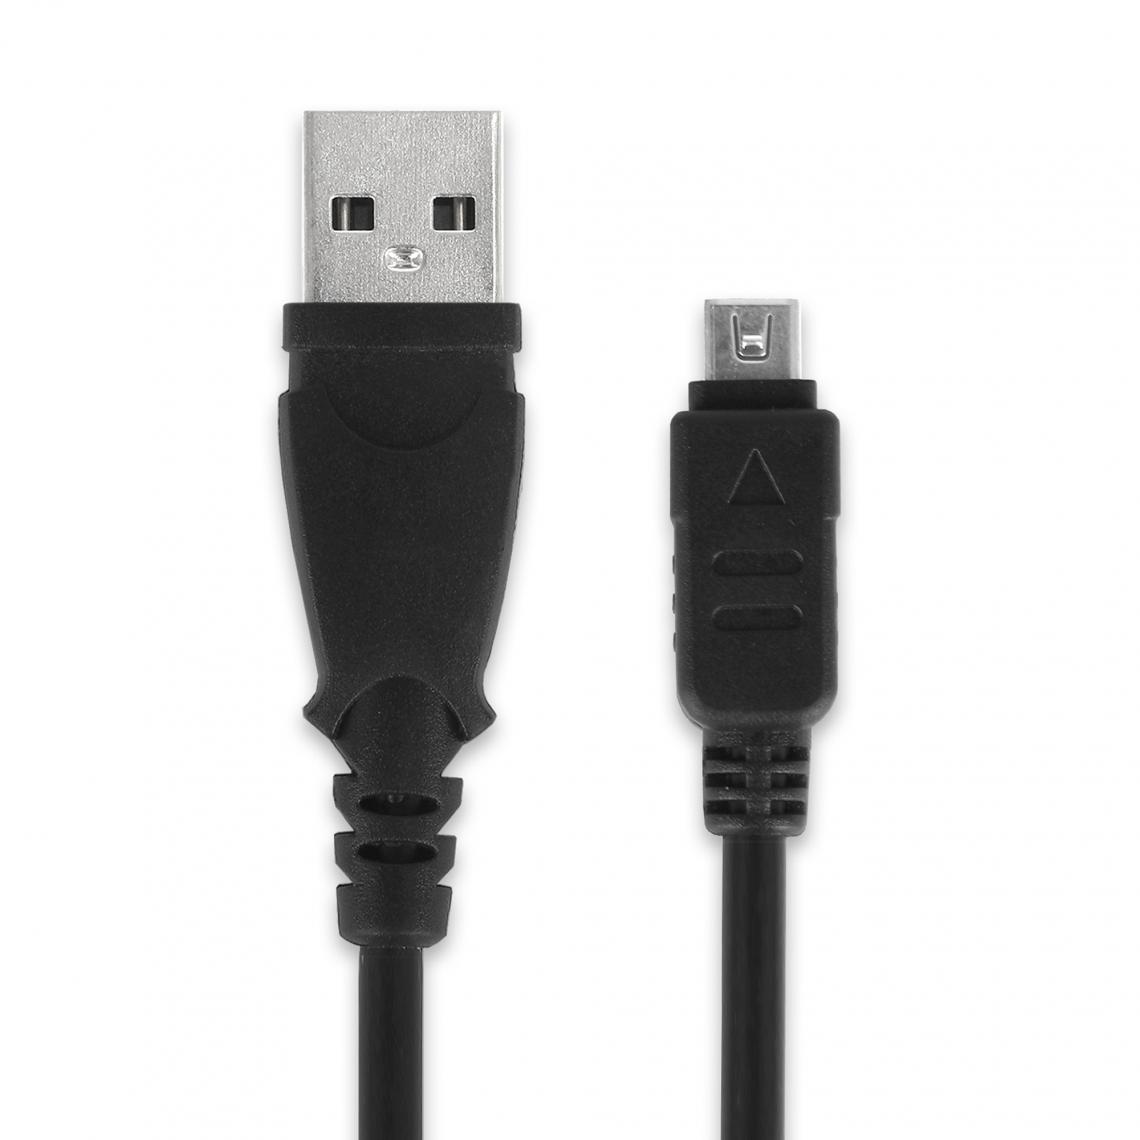 SUBTEL - subtel Câble USB 12 Pin USB 2.0 Transfert données 1.5m Compatible avec Appareil Photo Olympus Om-D E-M1 E-M10 Mark II Cable PVC Noir - Câble antenne